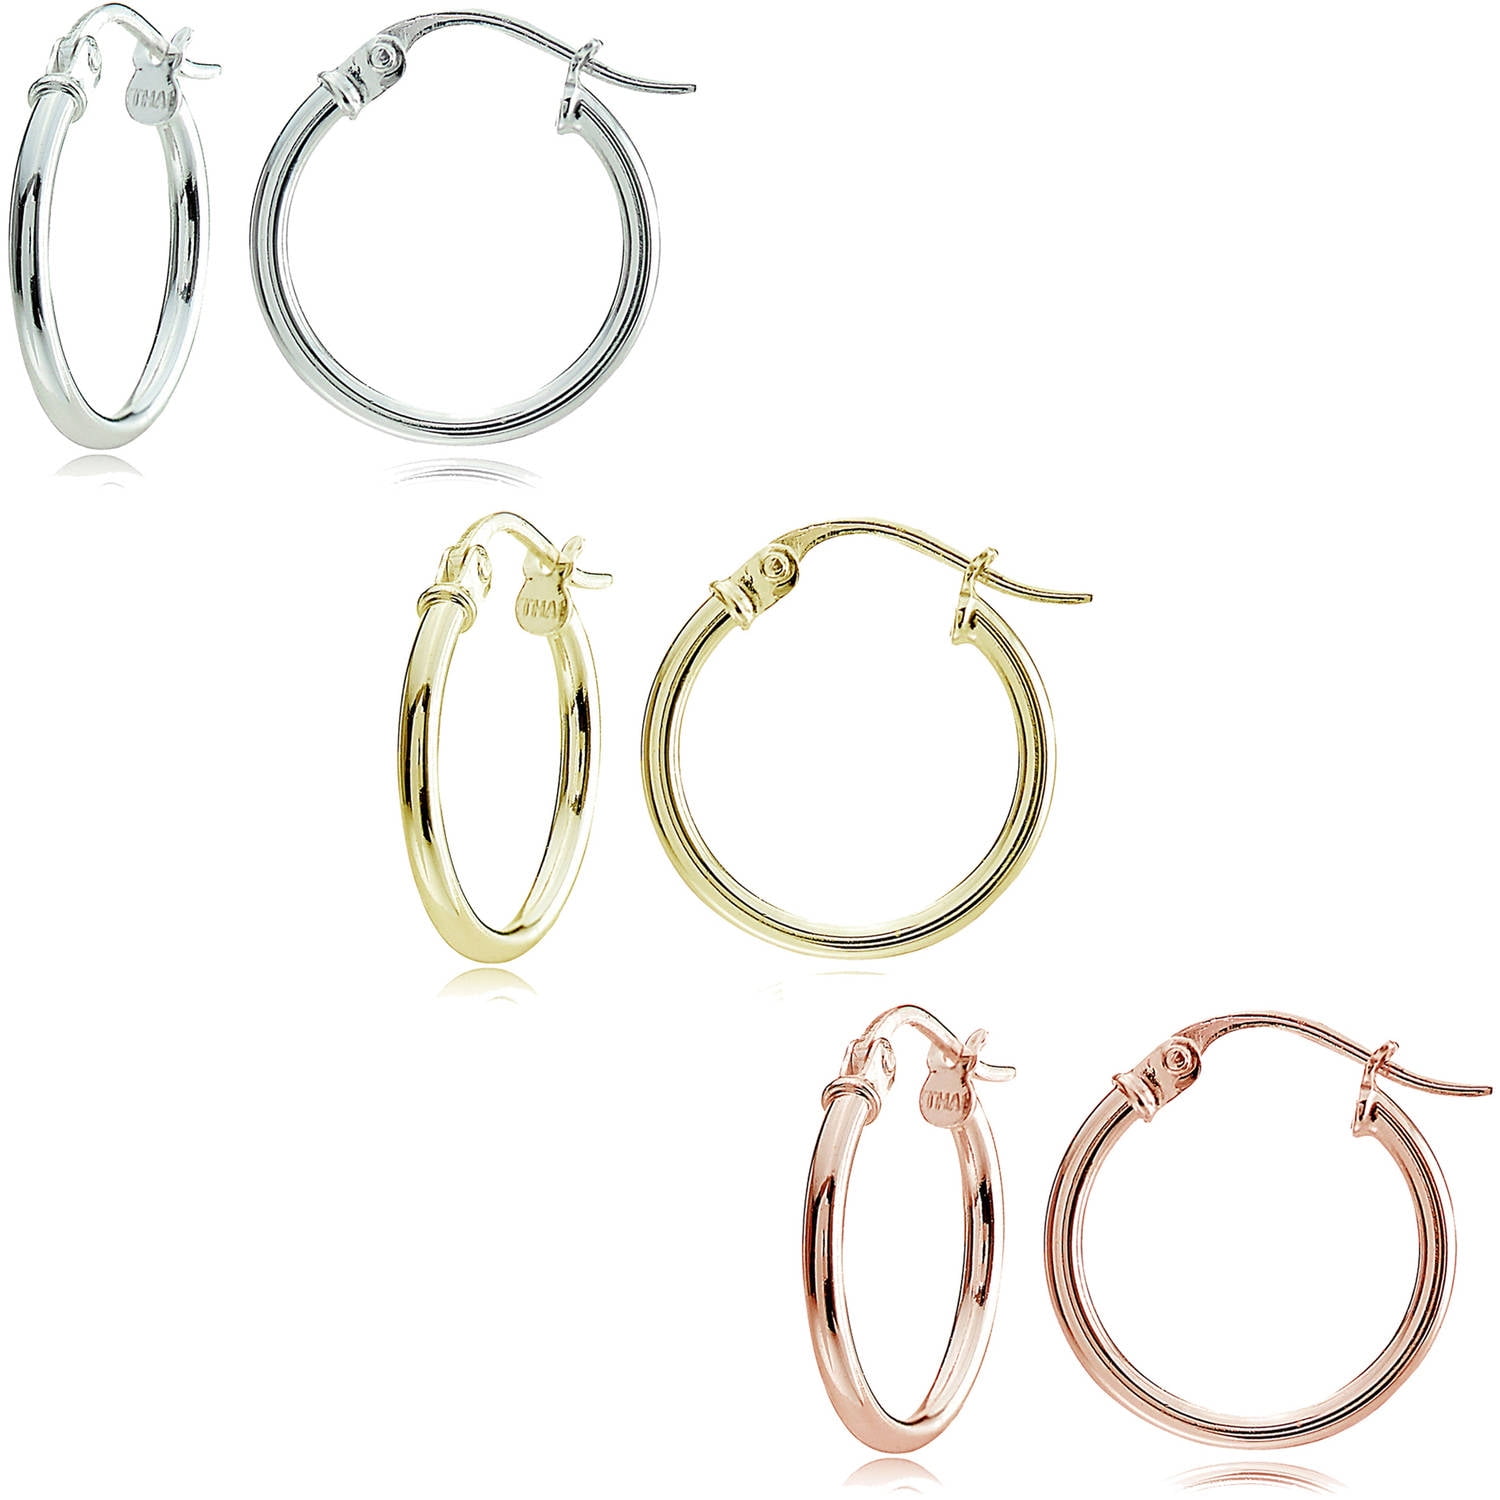 ANDI ROSE Fashion Jewelry Teardrop Drop Hoop 925 Sterling Silver Earrings for Women Girls sterling-silver, 16 MM